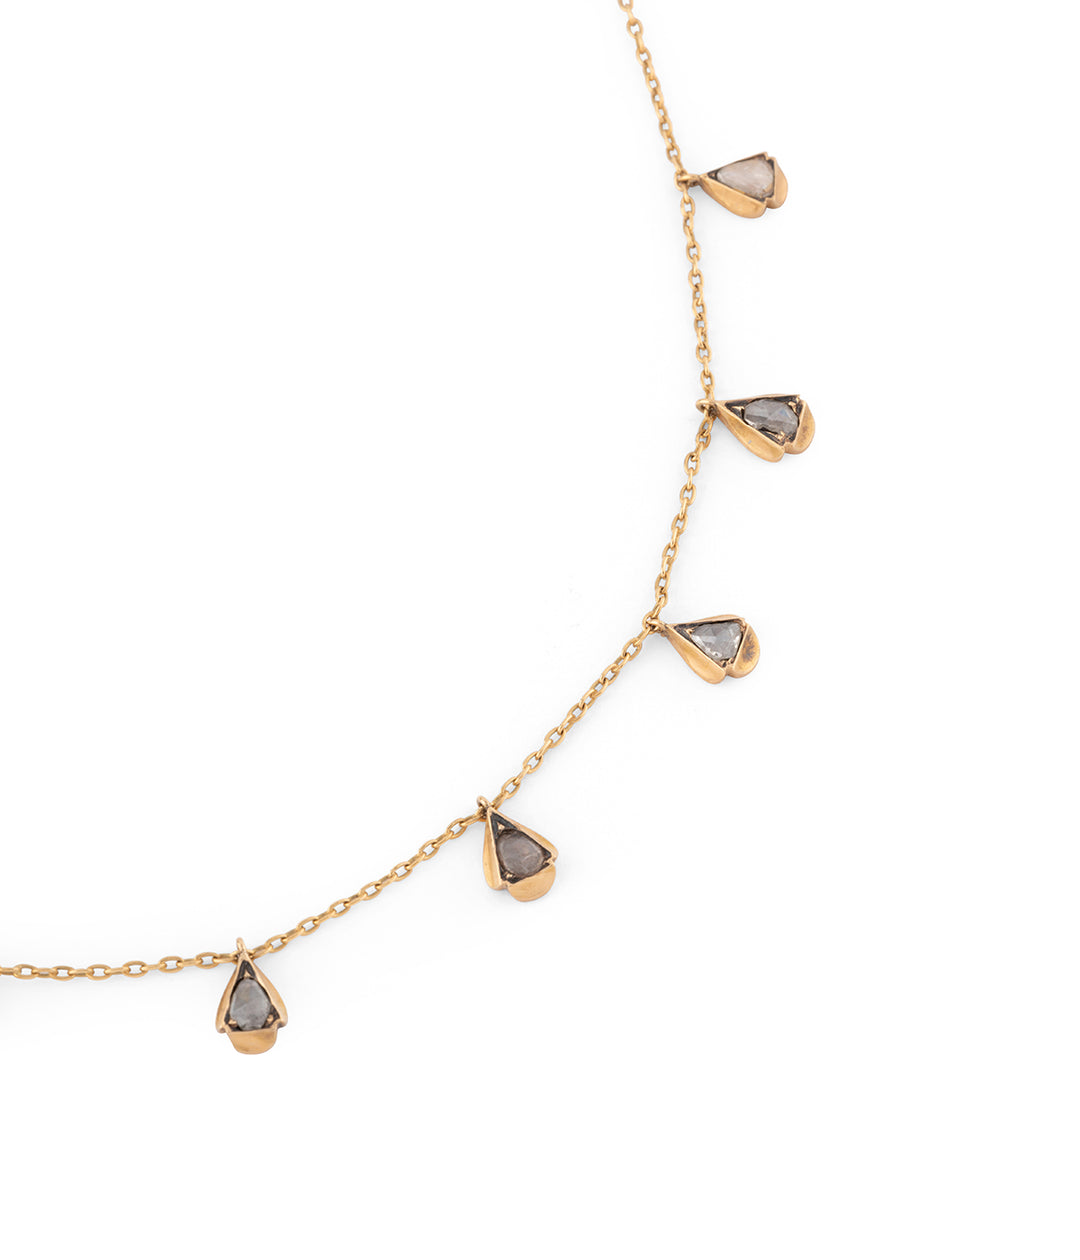 Antique gold necklace rosecut diamonds "Yuri" - Caillou Paris